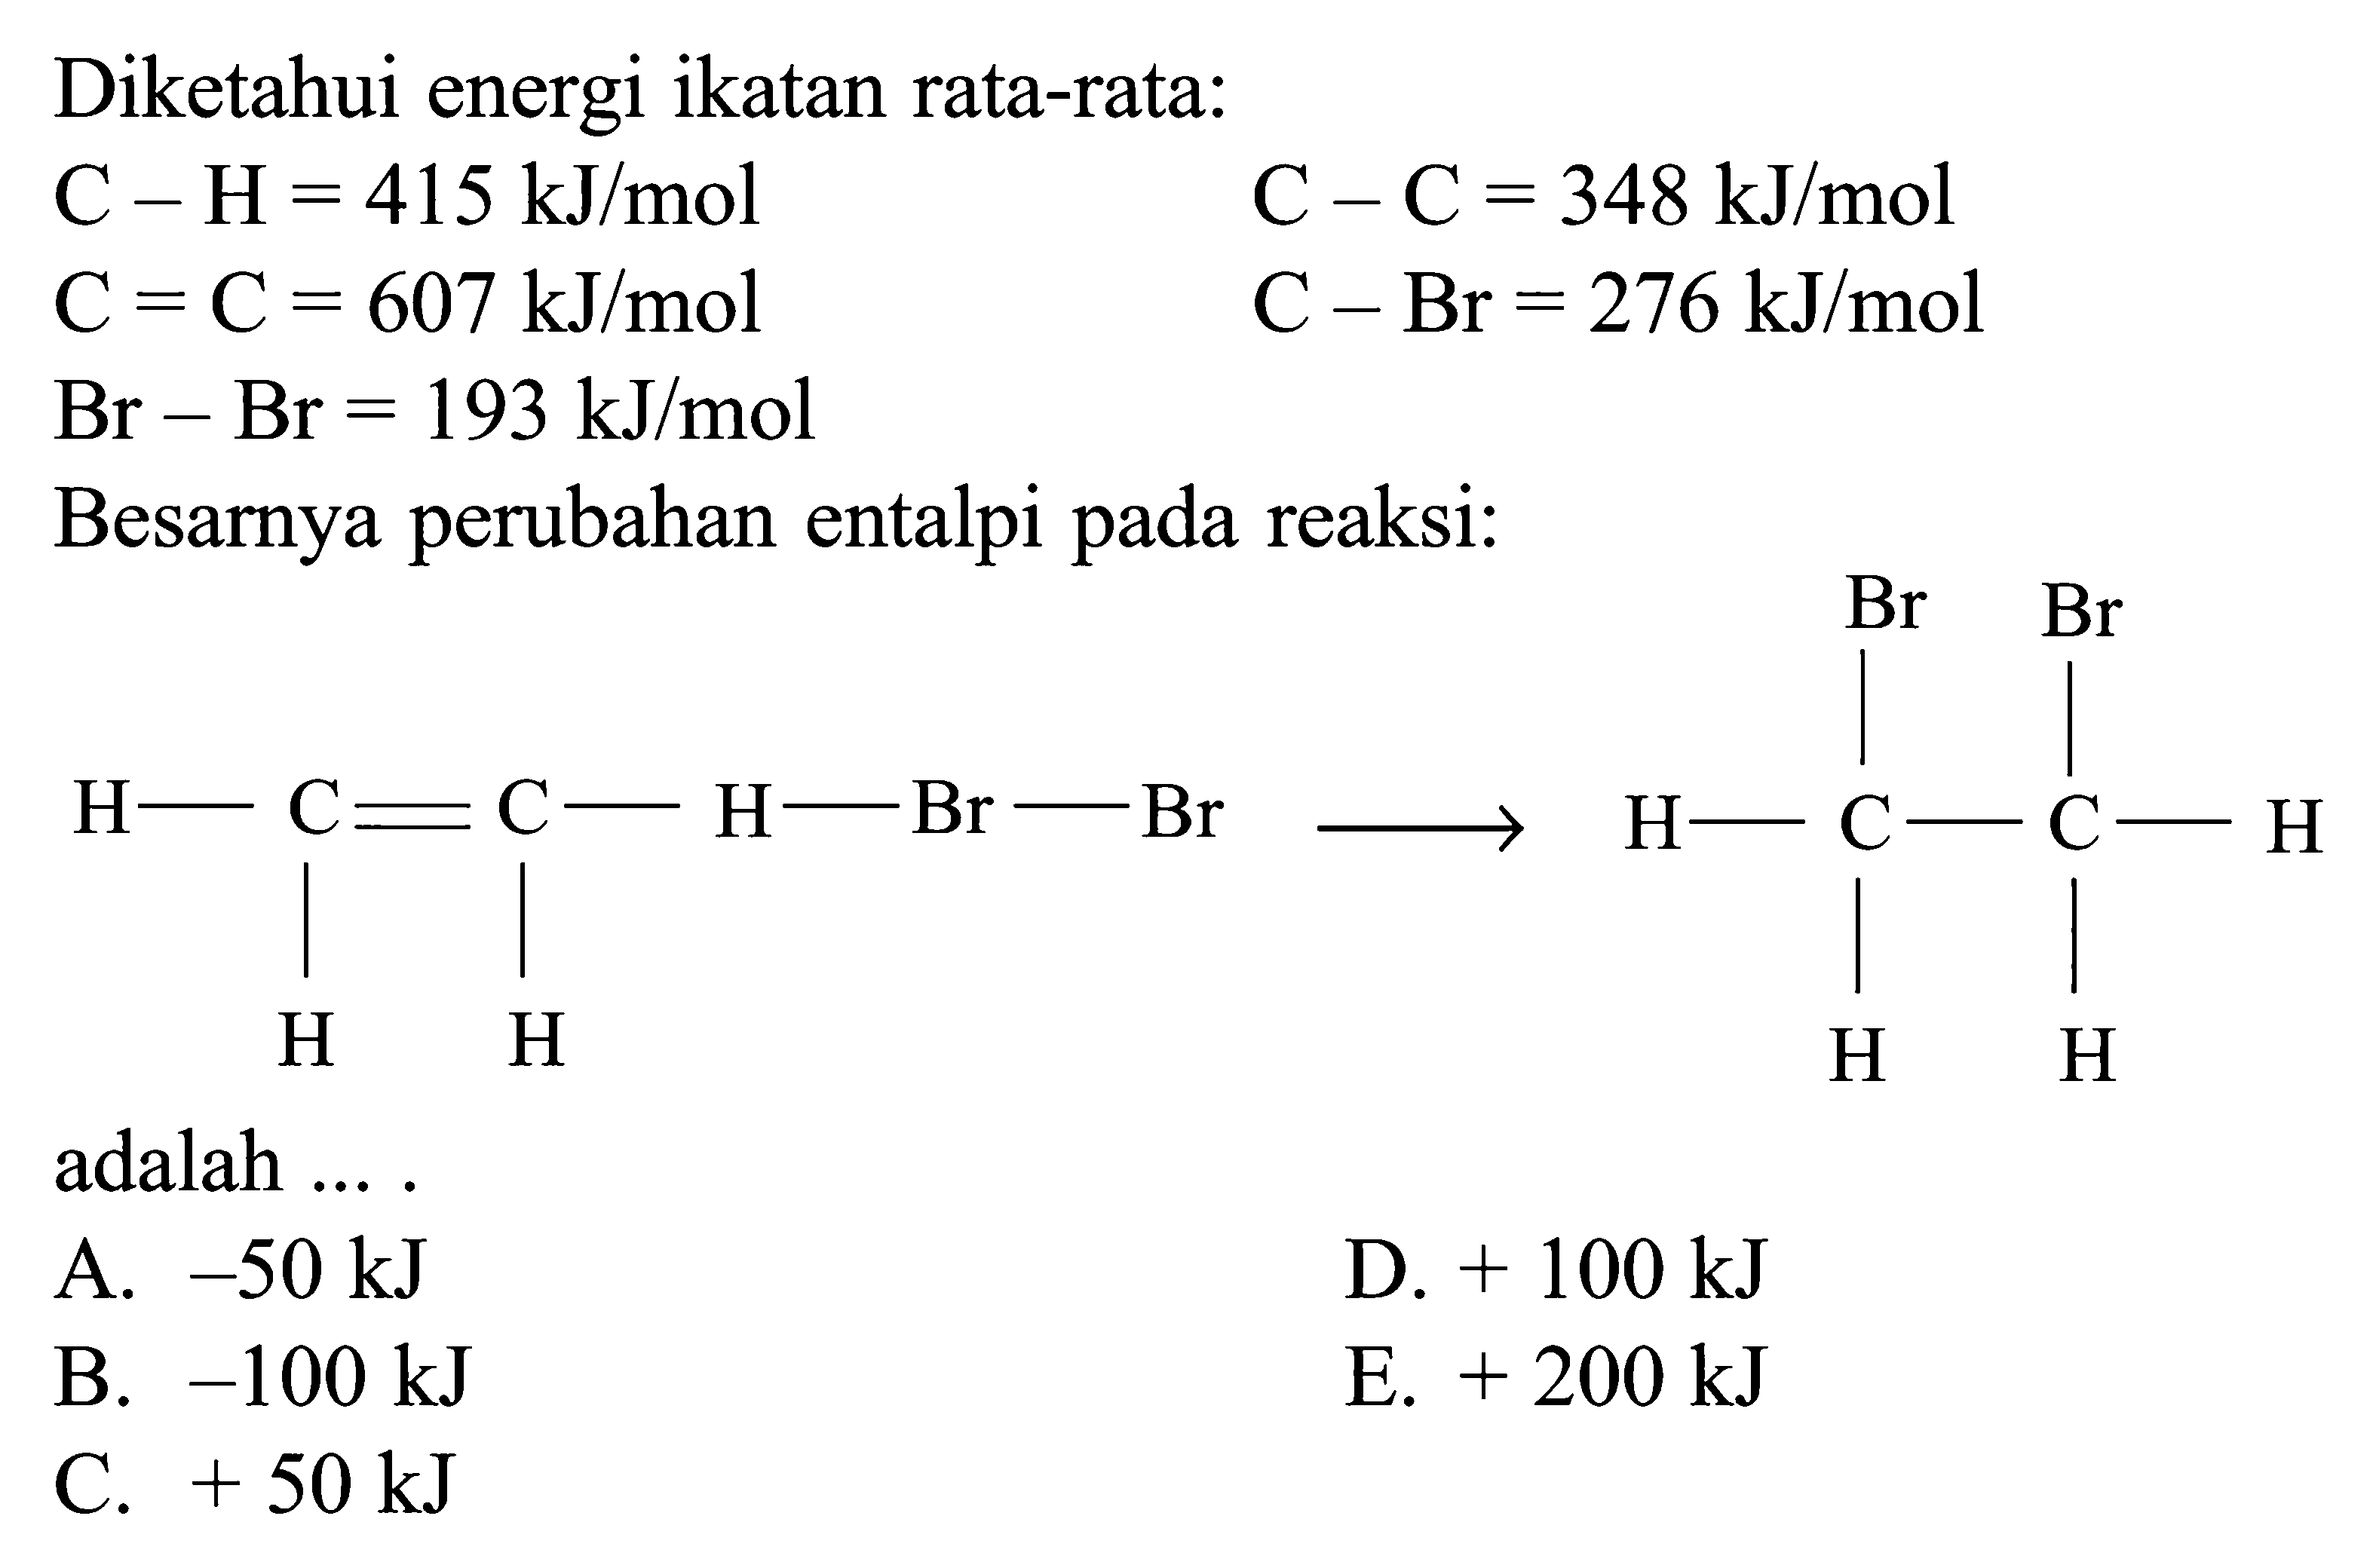 Diketahui energi ikatan rata-rata: C - H = 415 kJ/mol C = C = 348 kJ/mol C = C = 607 kJ/mol C - Br = 276 kJ/mol Br - Br = 193 kJ/mol Besarnya perubahan entalpi pada reaksi: H - C = C - H - Br - Br H H -> Br Br H - C - C - H H H adalah ....